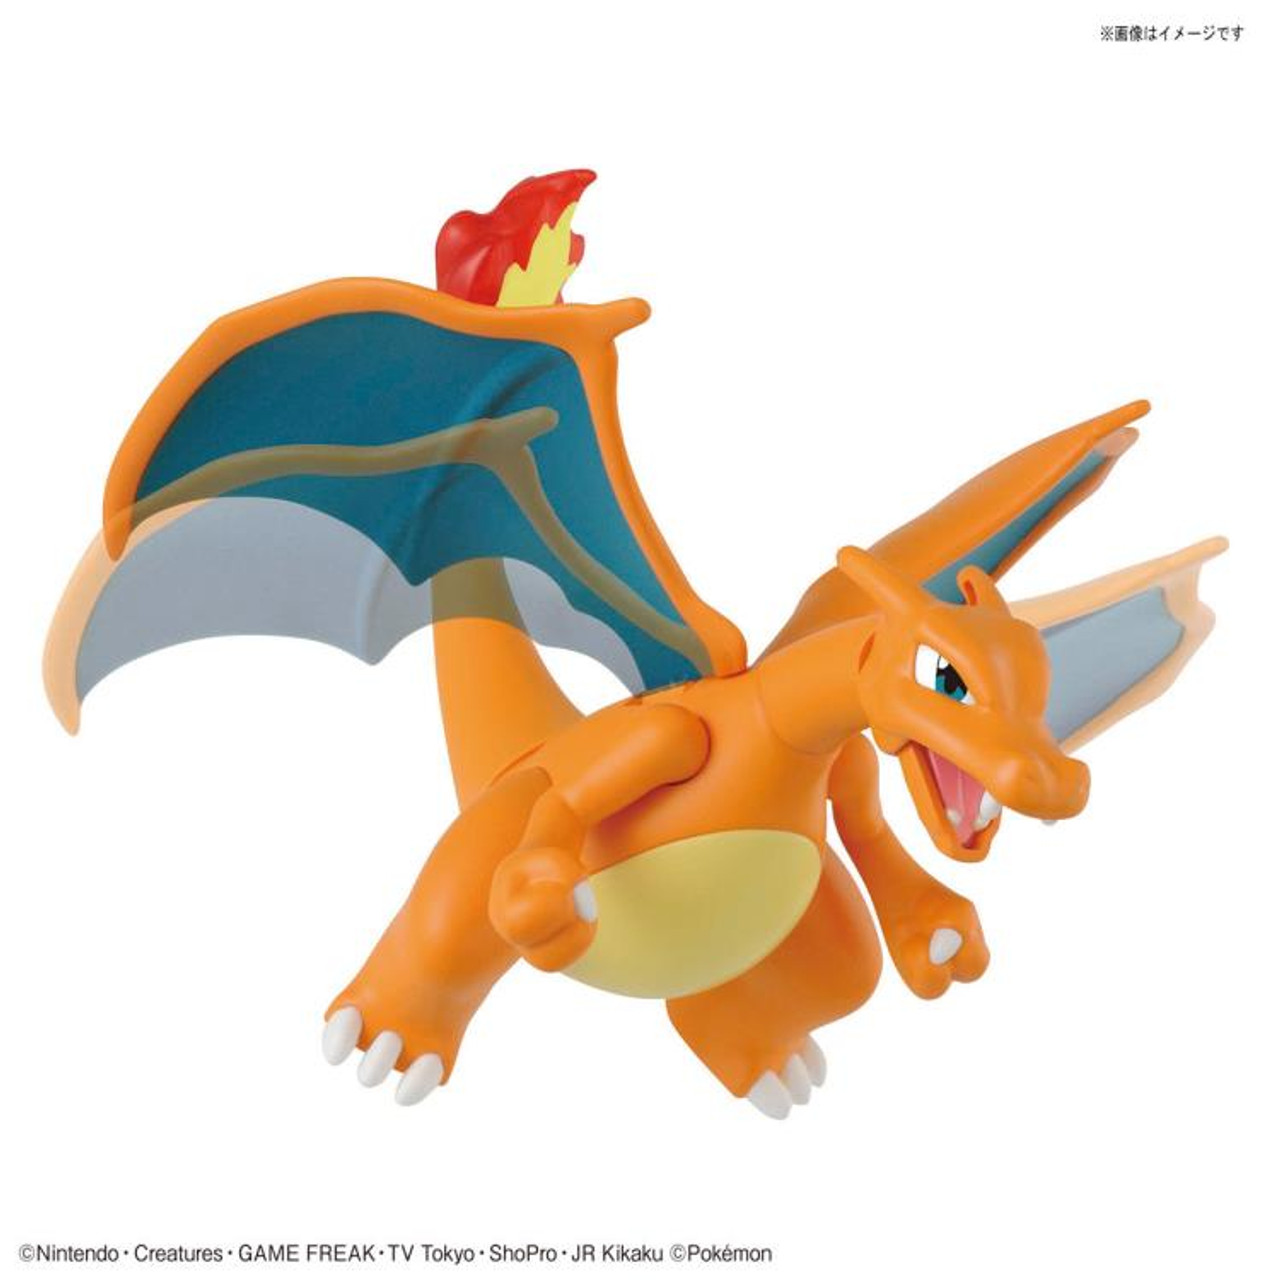 Pokémon Model Kit Collection #043 - Charizard & Dragonite